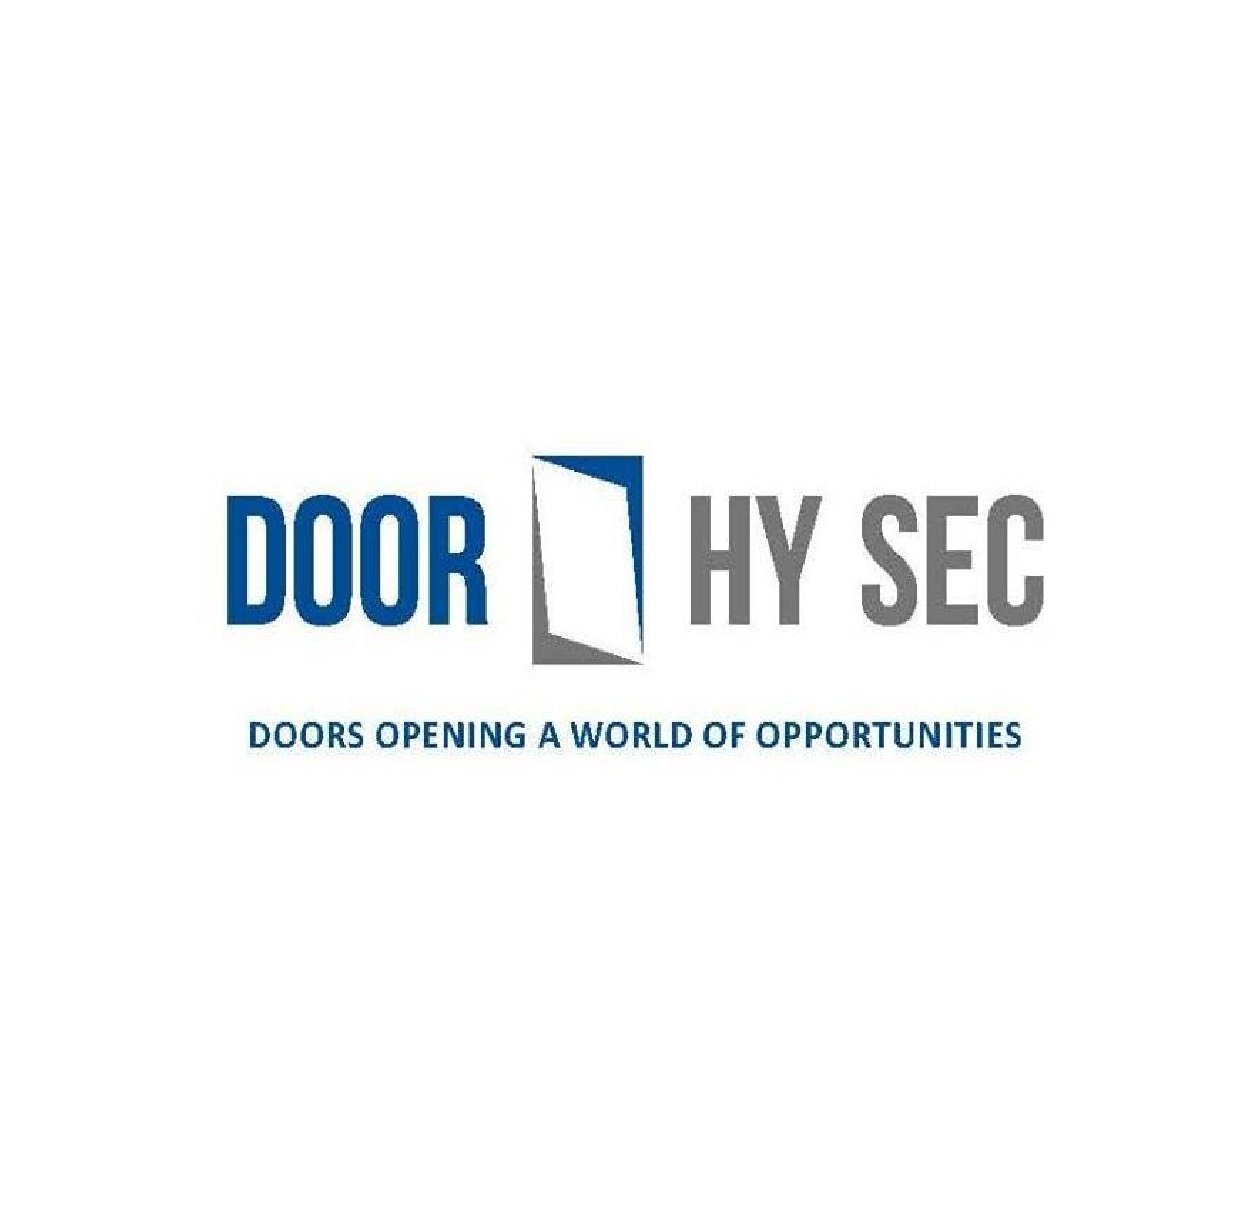 DOOR HY SEC